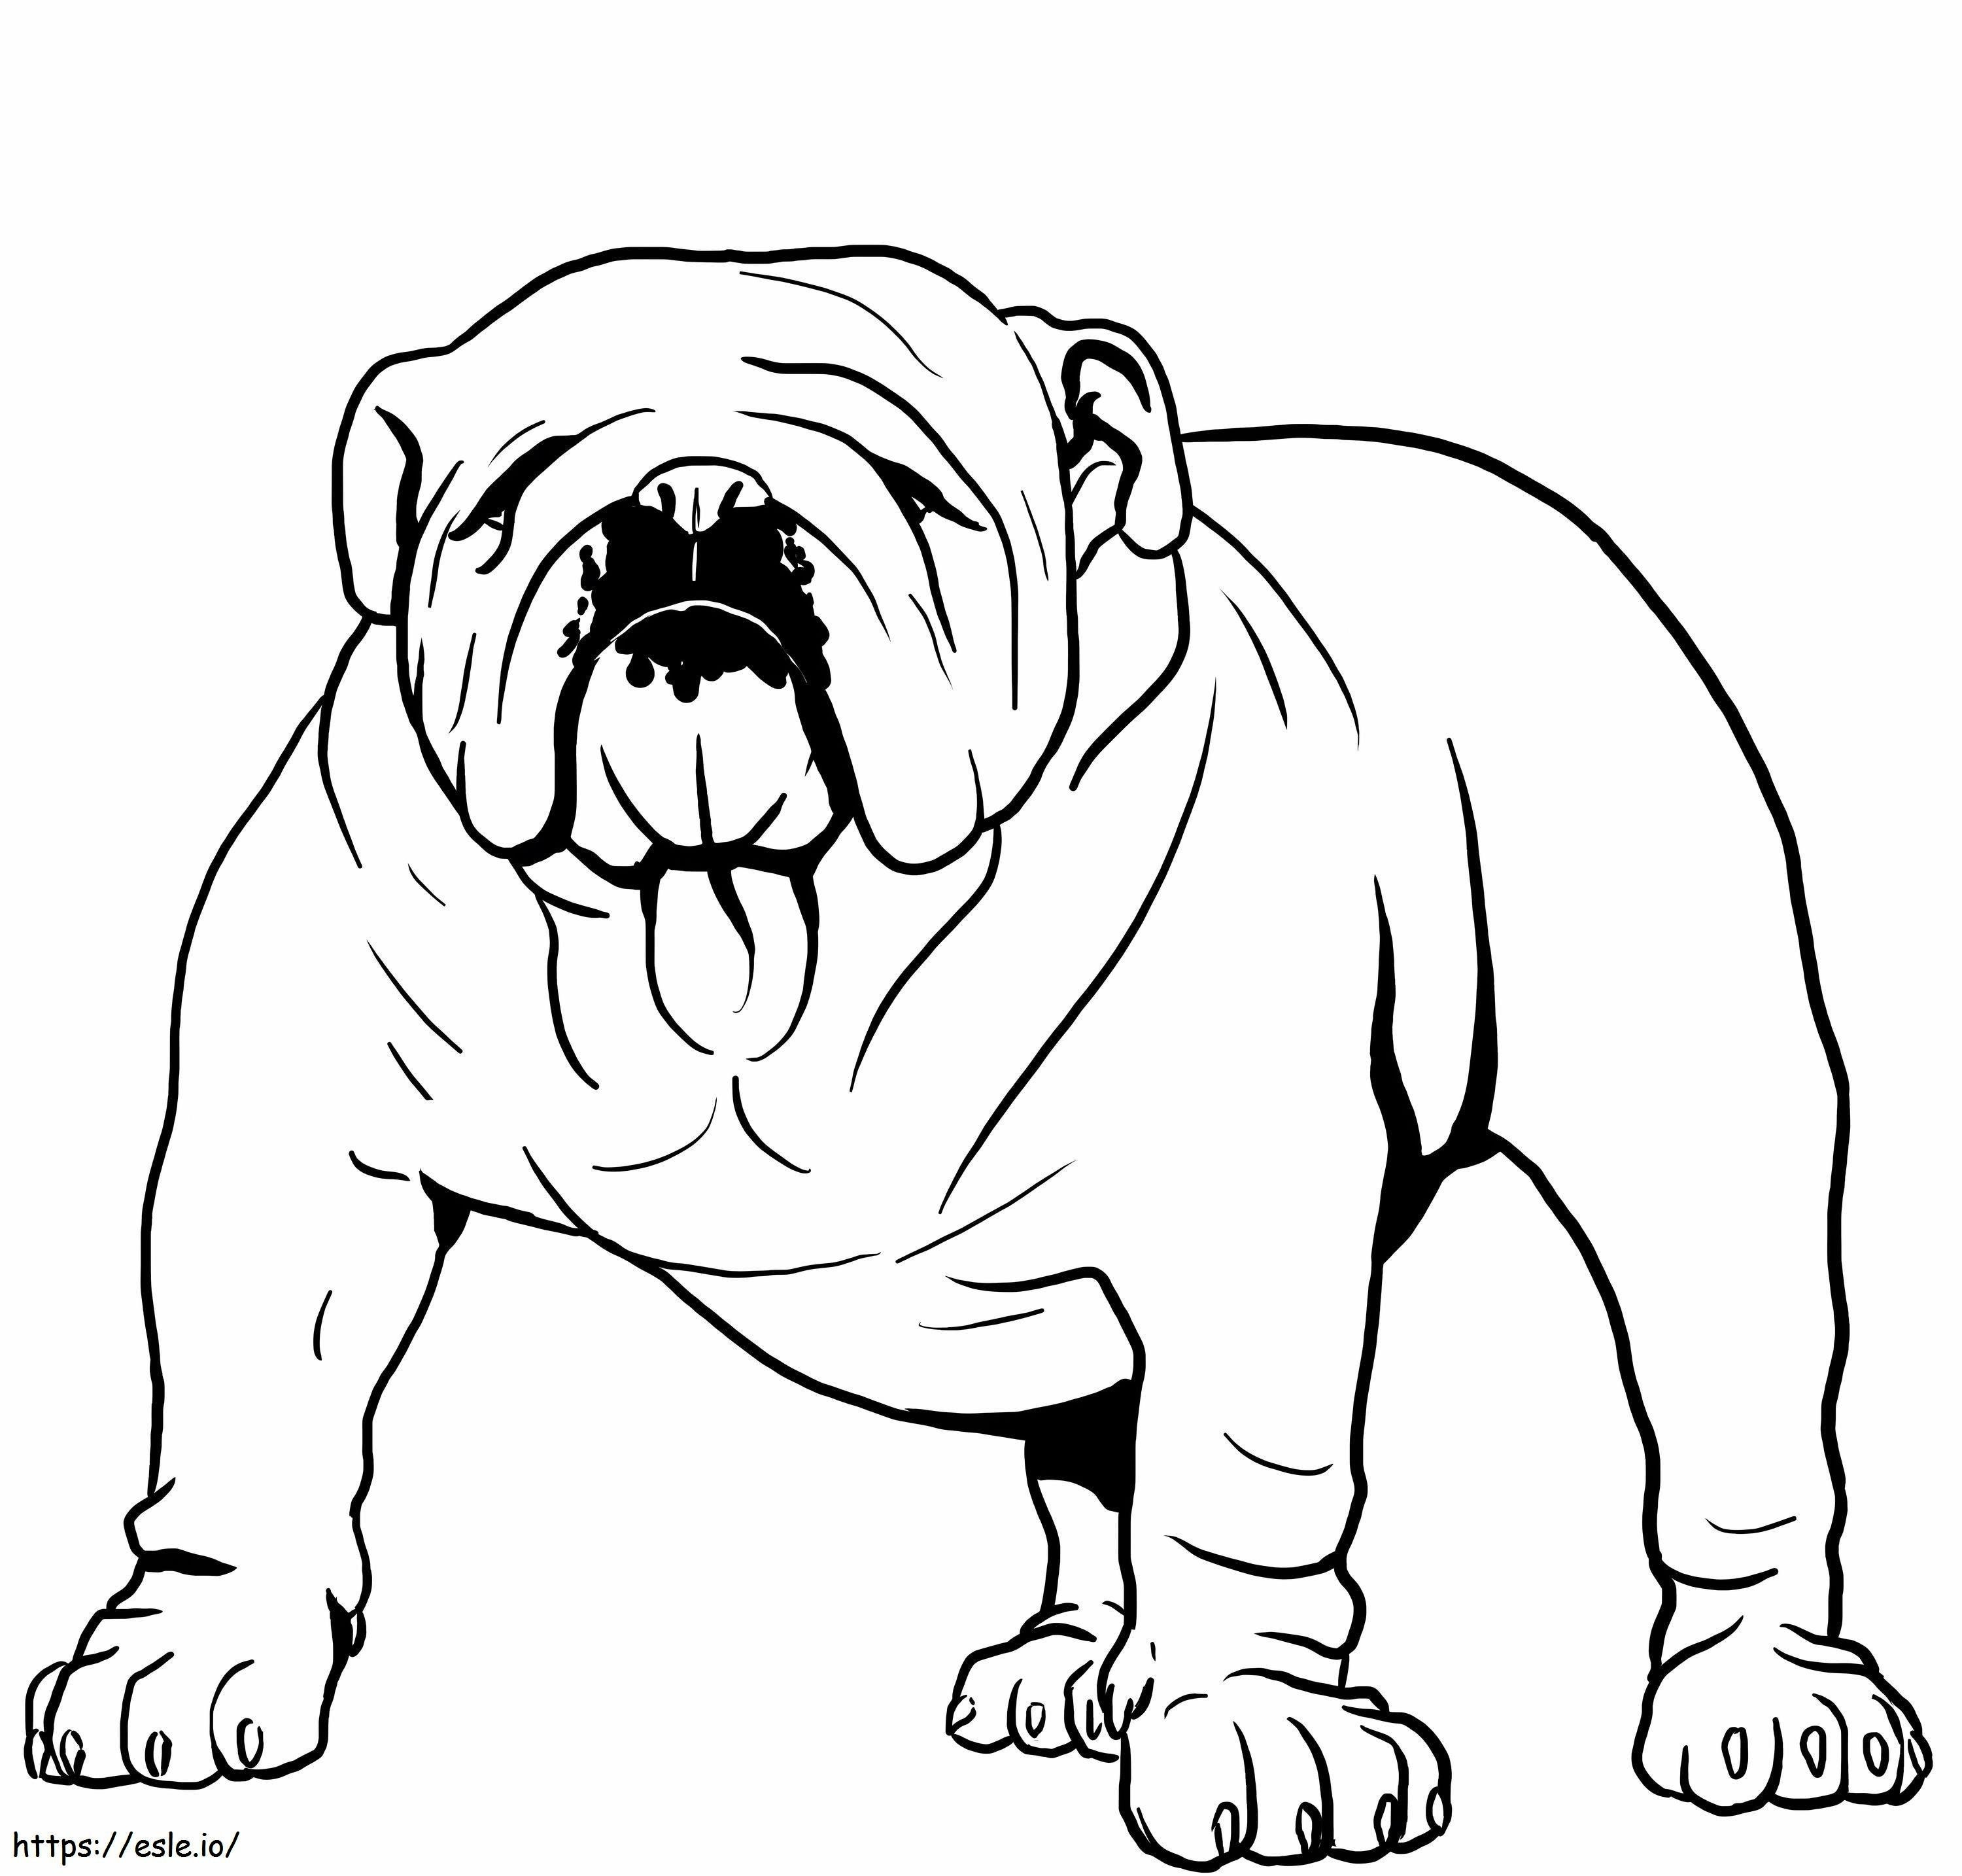 Strong Bulldog coloring page